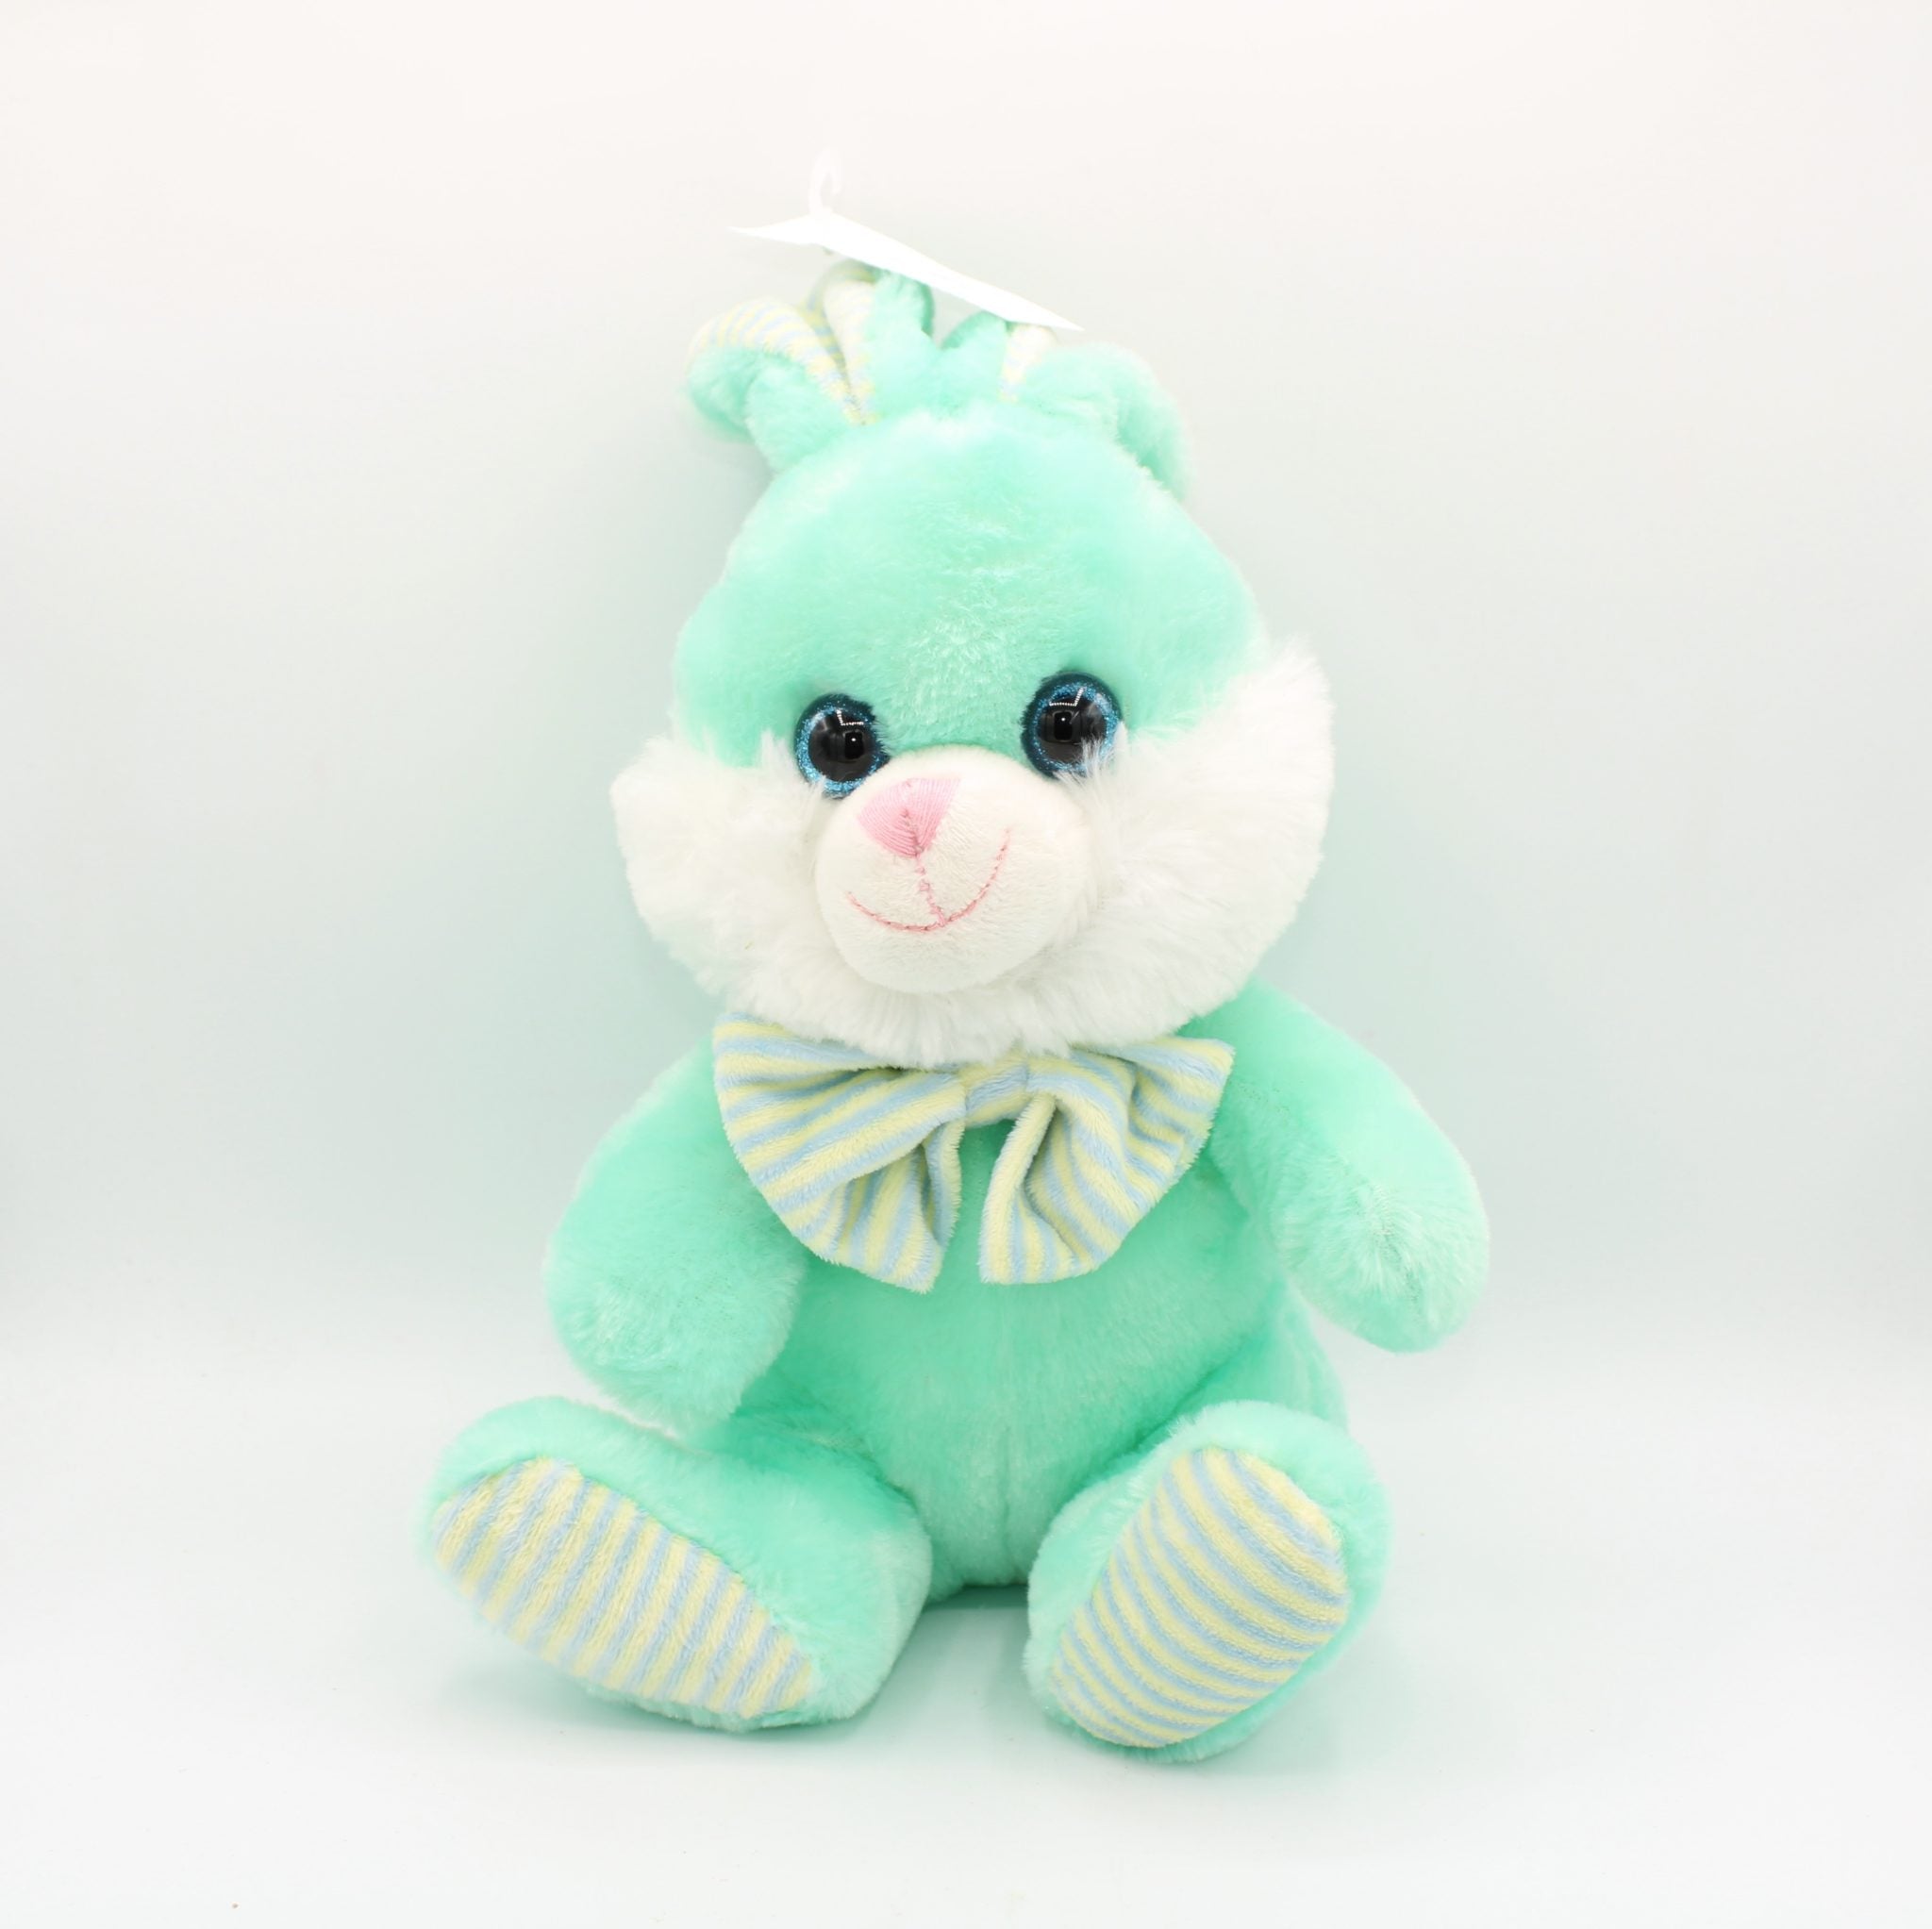 KellyToy Blue Rabbit Stuffed Toy